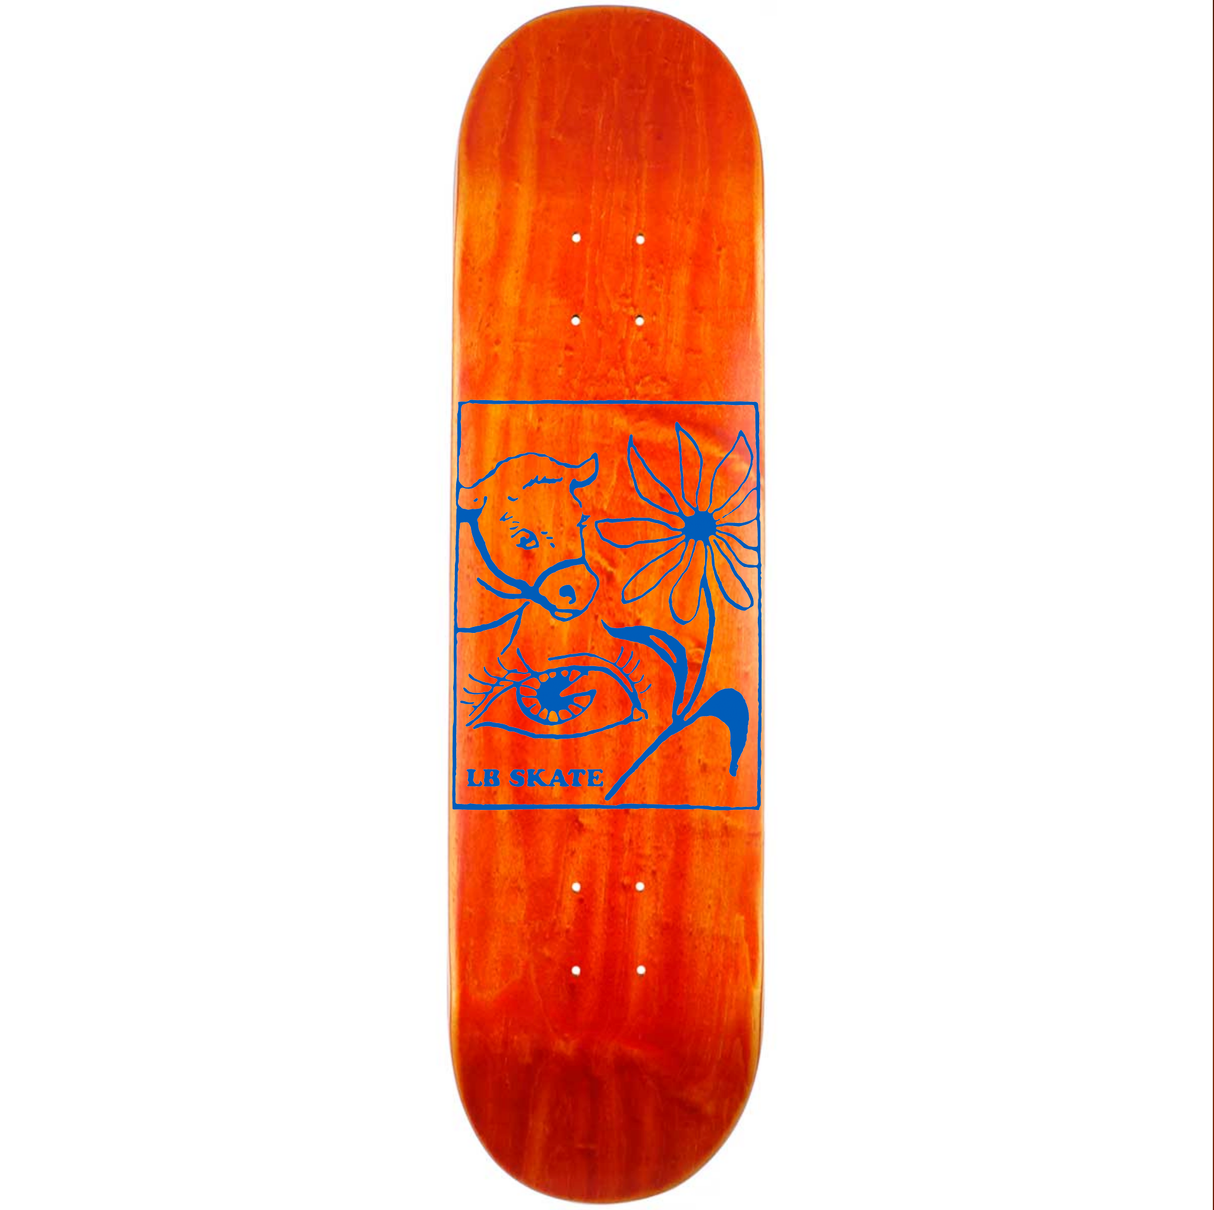 Long Beach Skate Co. "Randomness" 7.75" Orange Stain Skateboard Deck